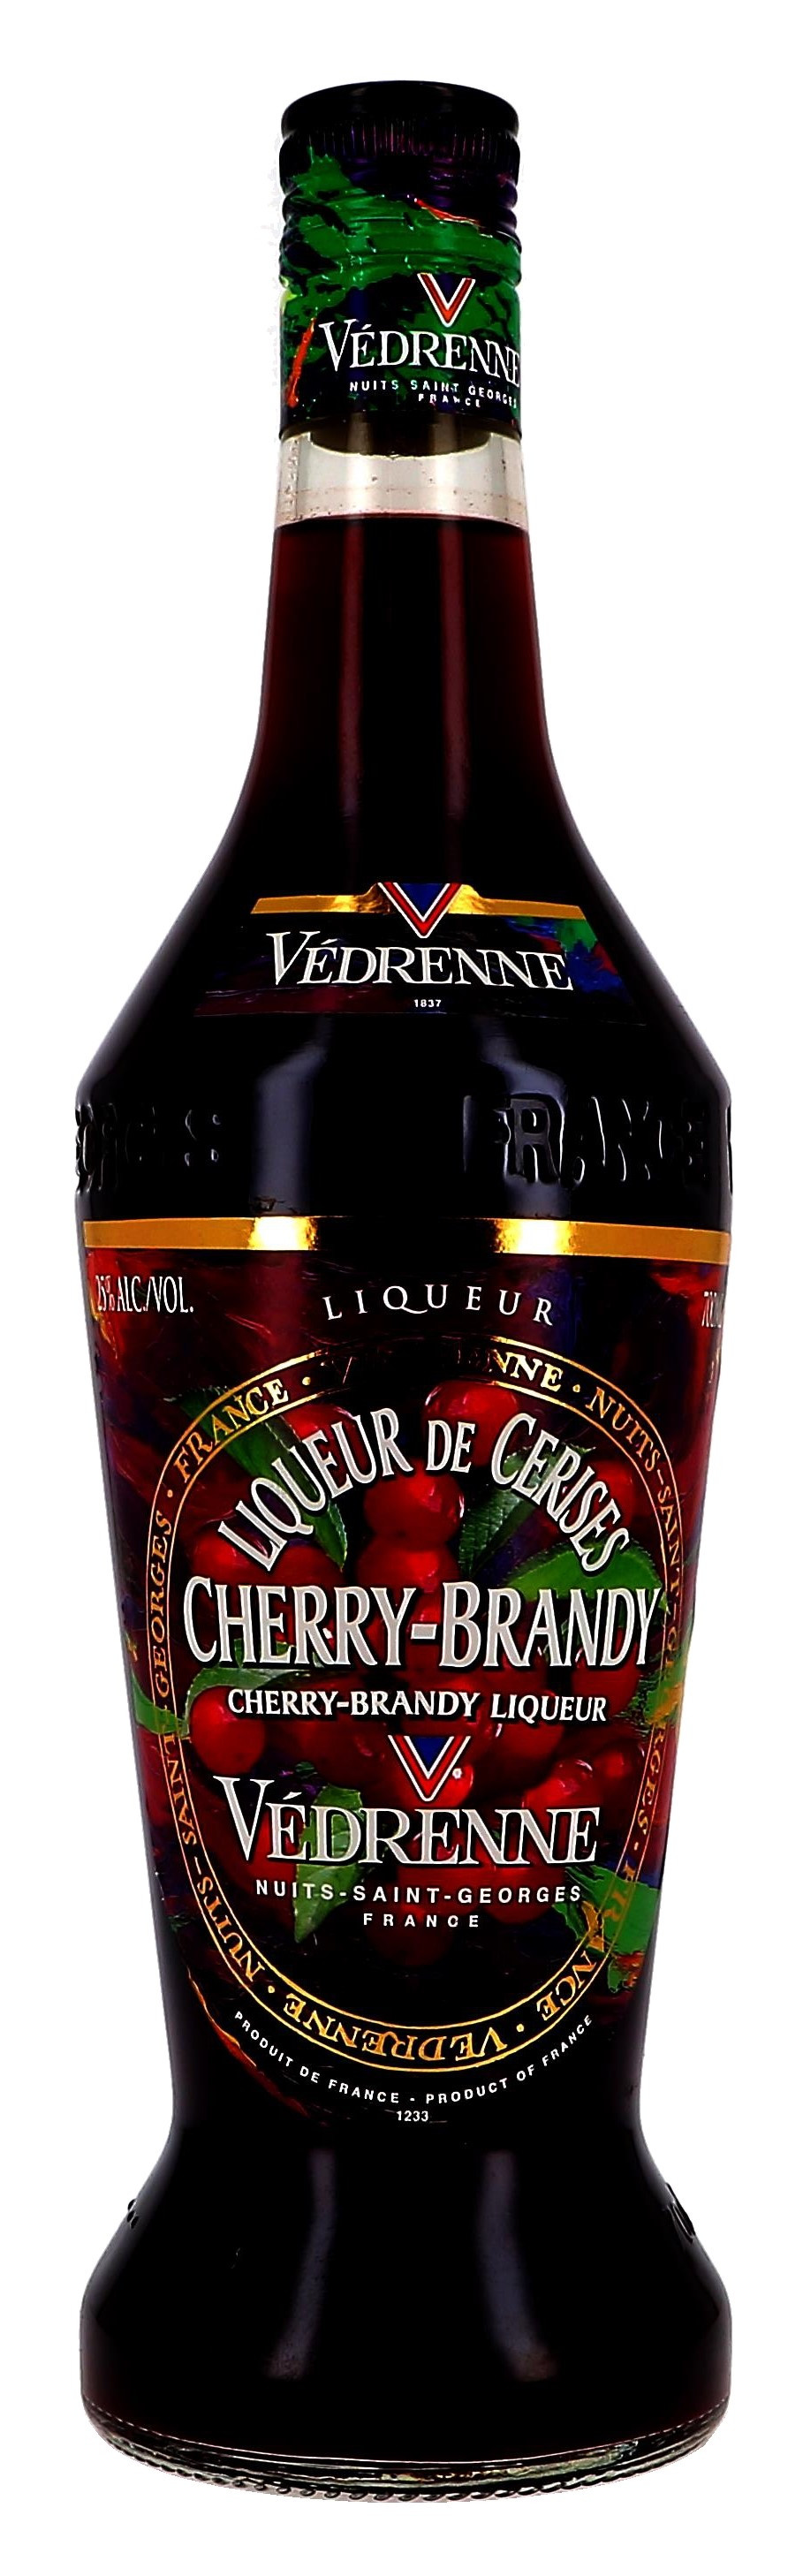 Vedrenne Cherry Brandy 70cl 25% Liqueur de Cerises (Likeuren)